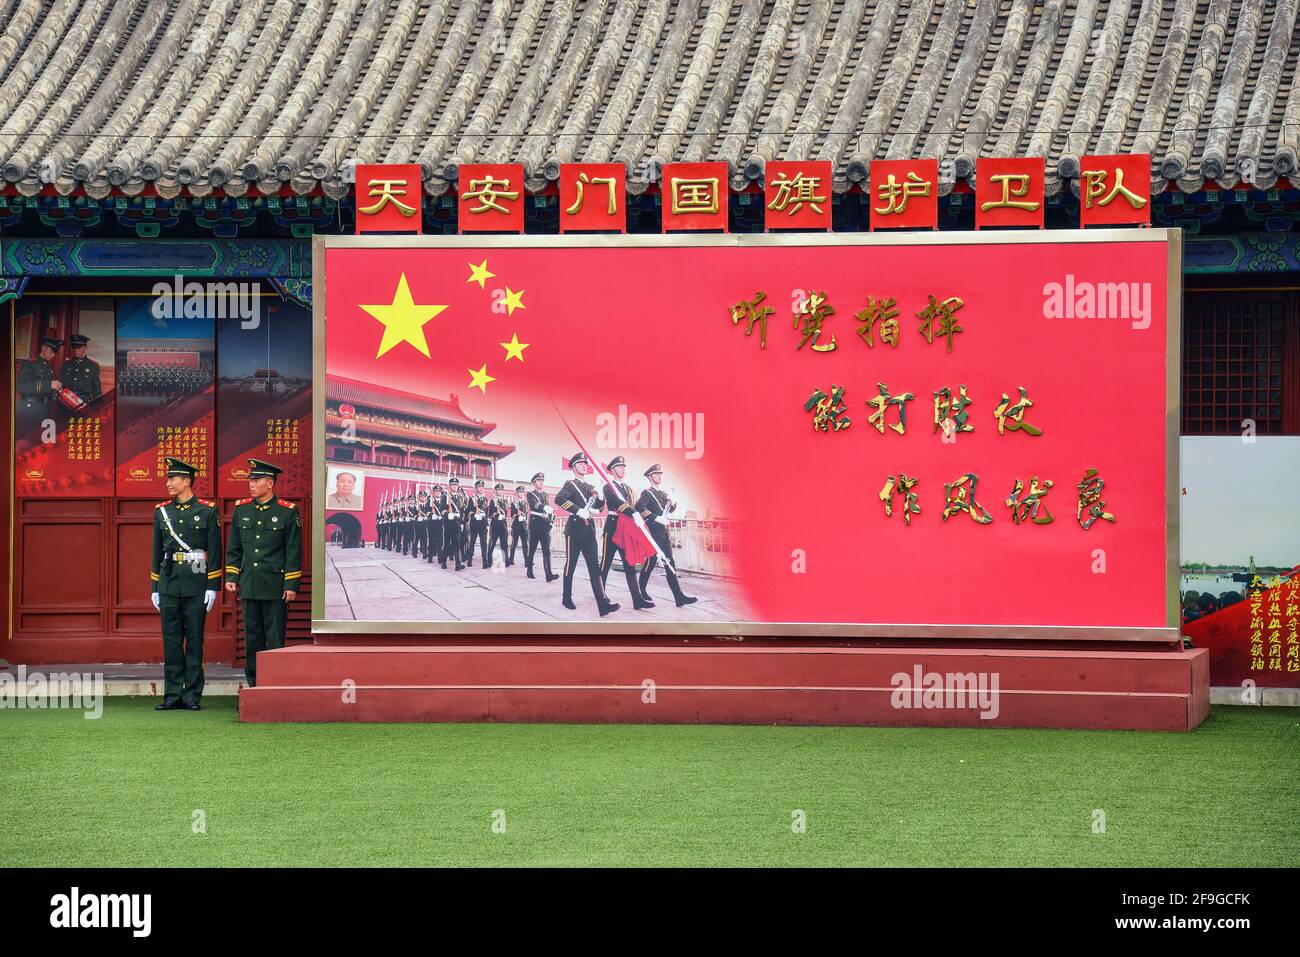 Peking, China - 9. November 2017: Soldaten der chinesischen Streitkräfte stehen auf dem Platz des Himmlischen Friedens zu einem pro-chinesischen Schild der Kommunistischen Partei. Stockfoto